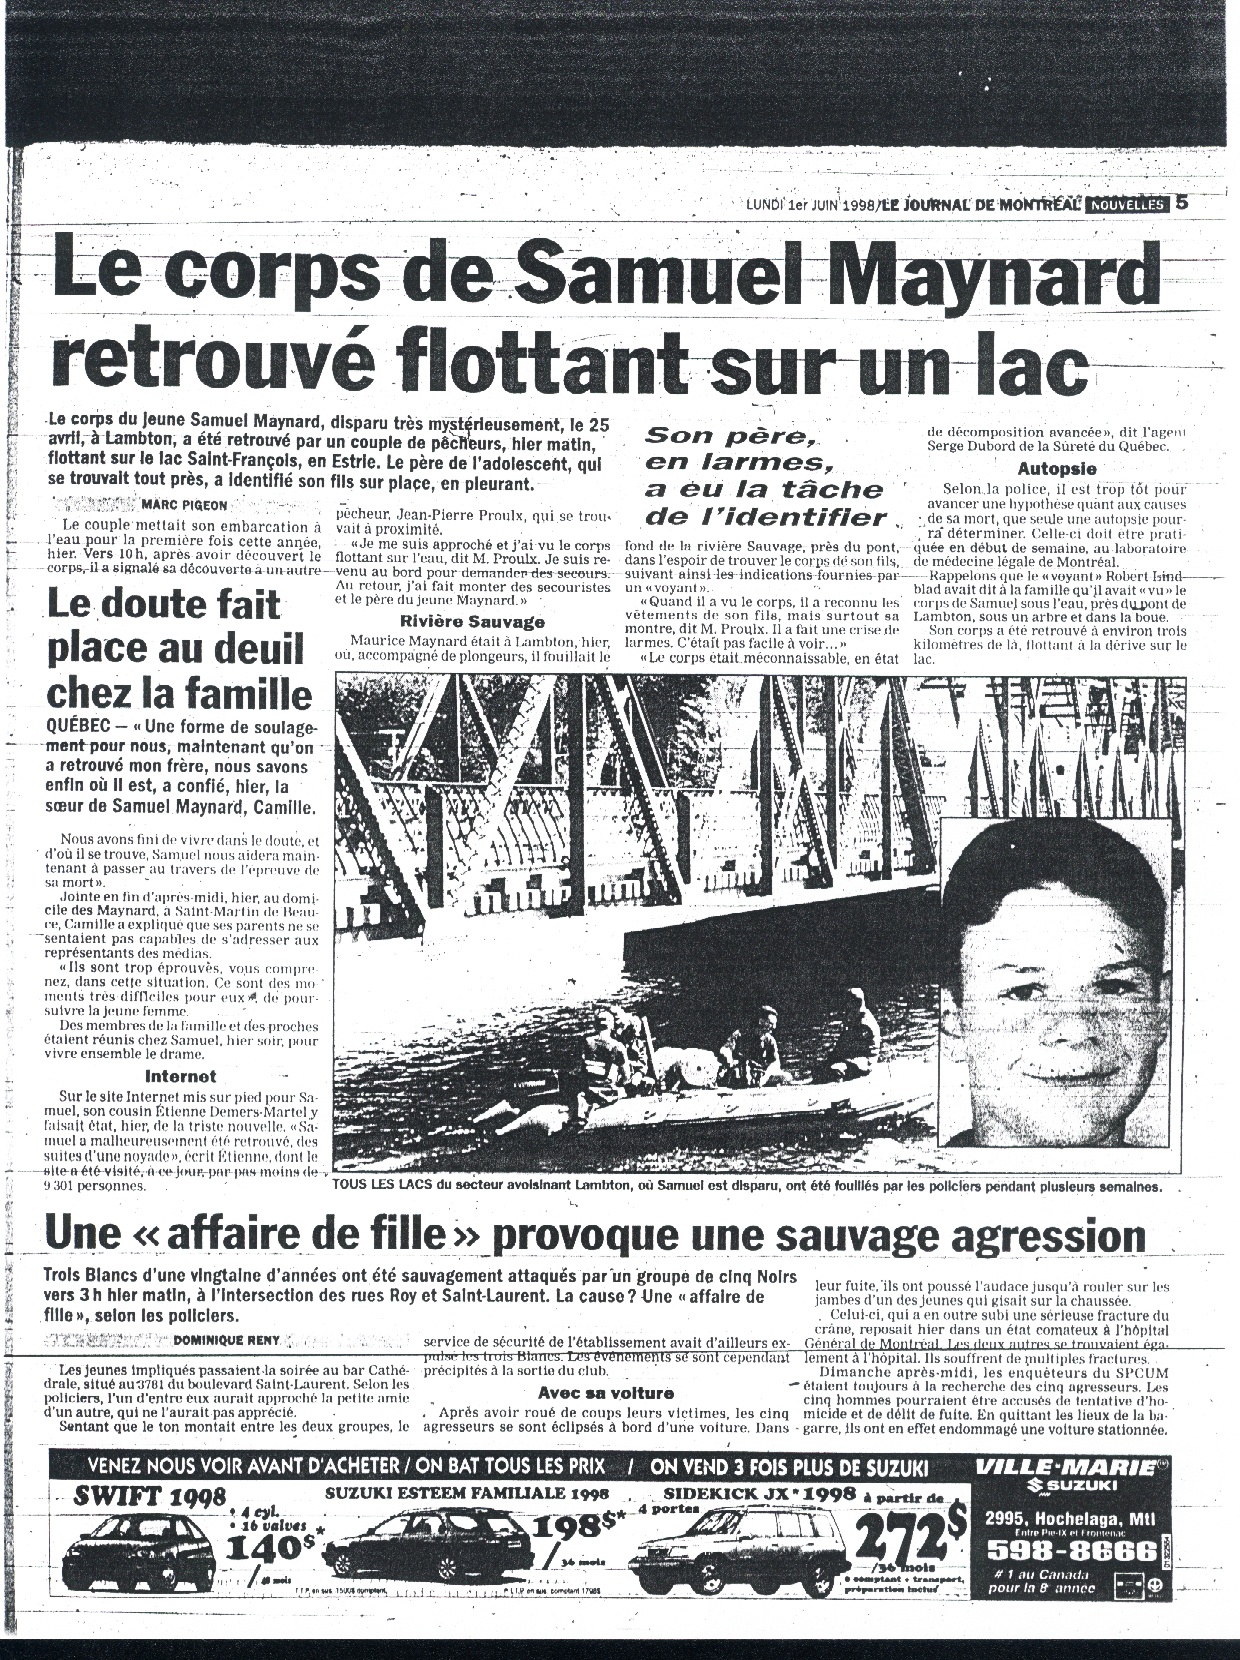 Journal de Montreal 1 - 6 - 98